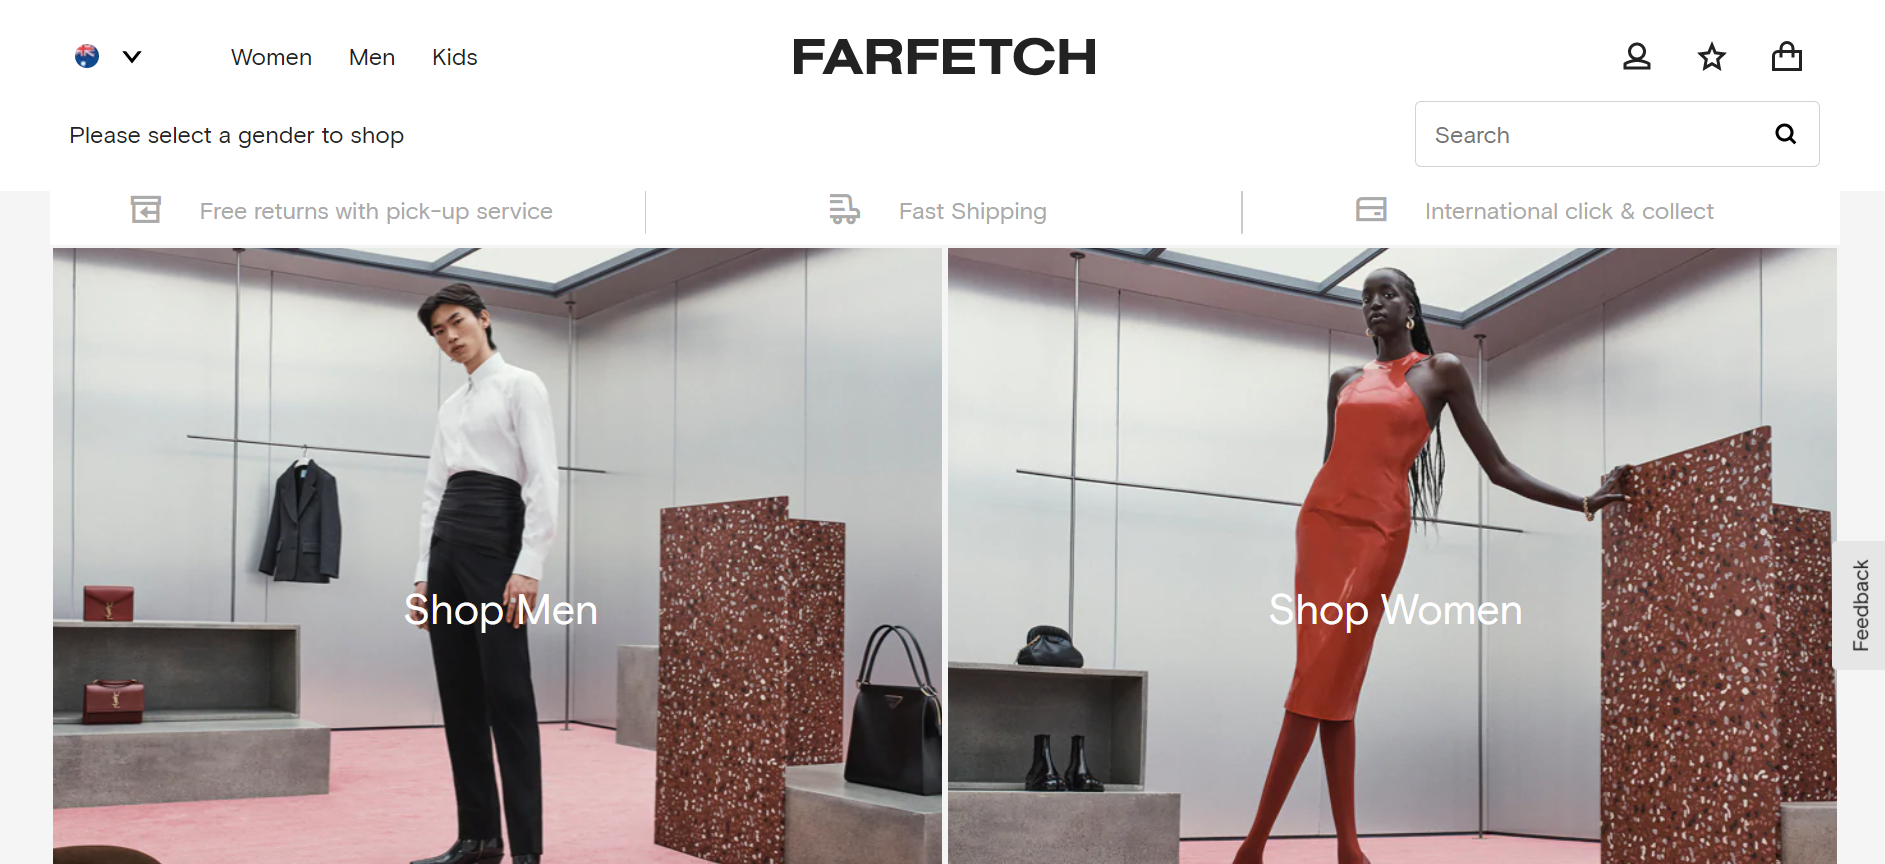 Farfetch website homepage